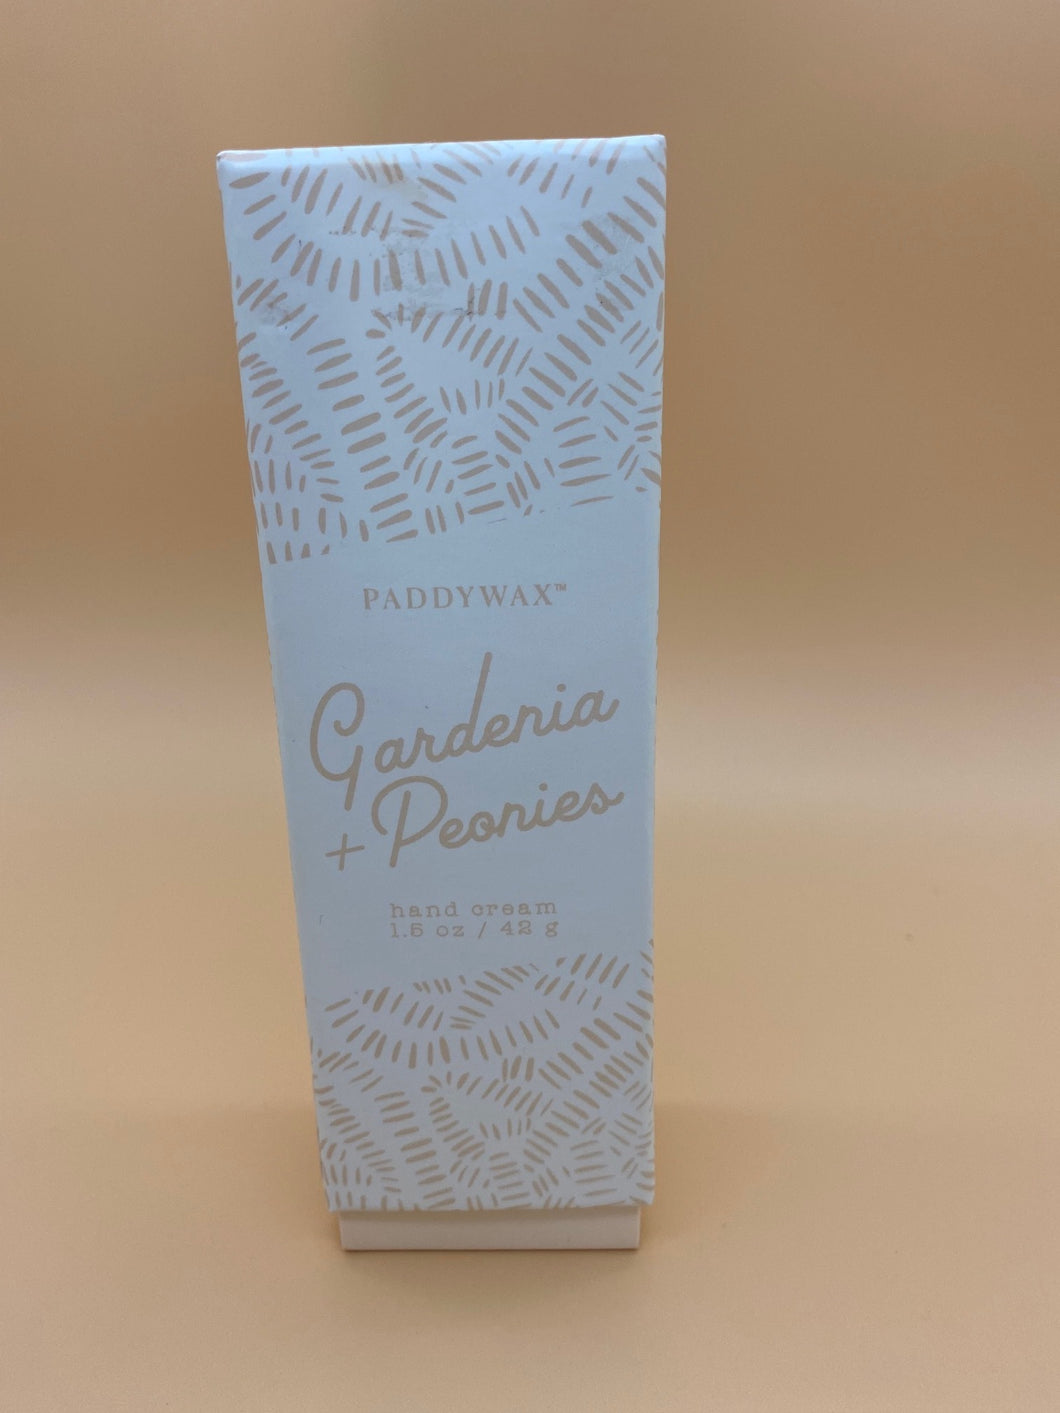 Paddywax-Gardenia Peonies Hand Cream